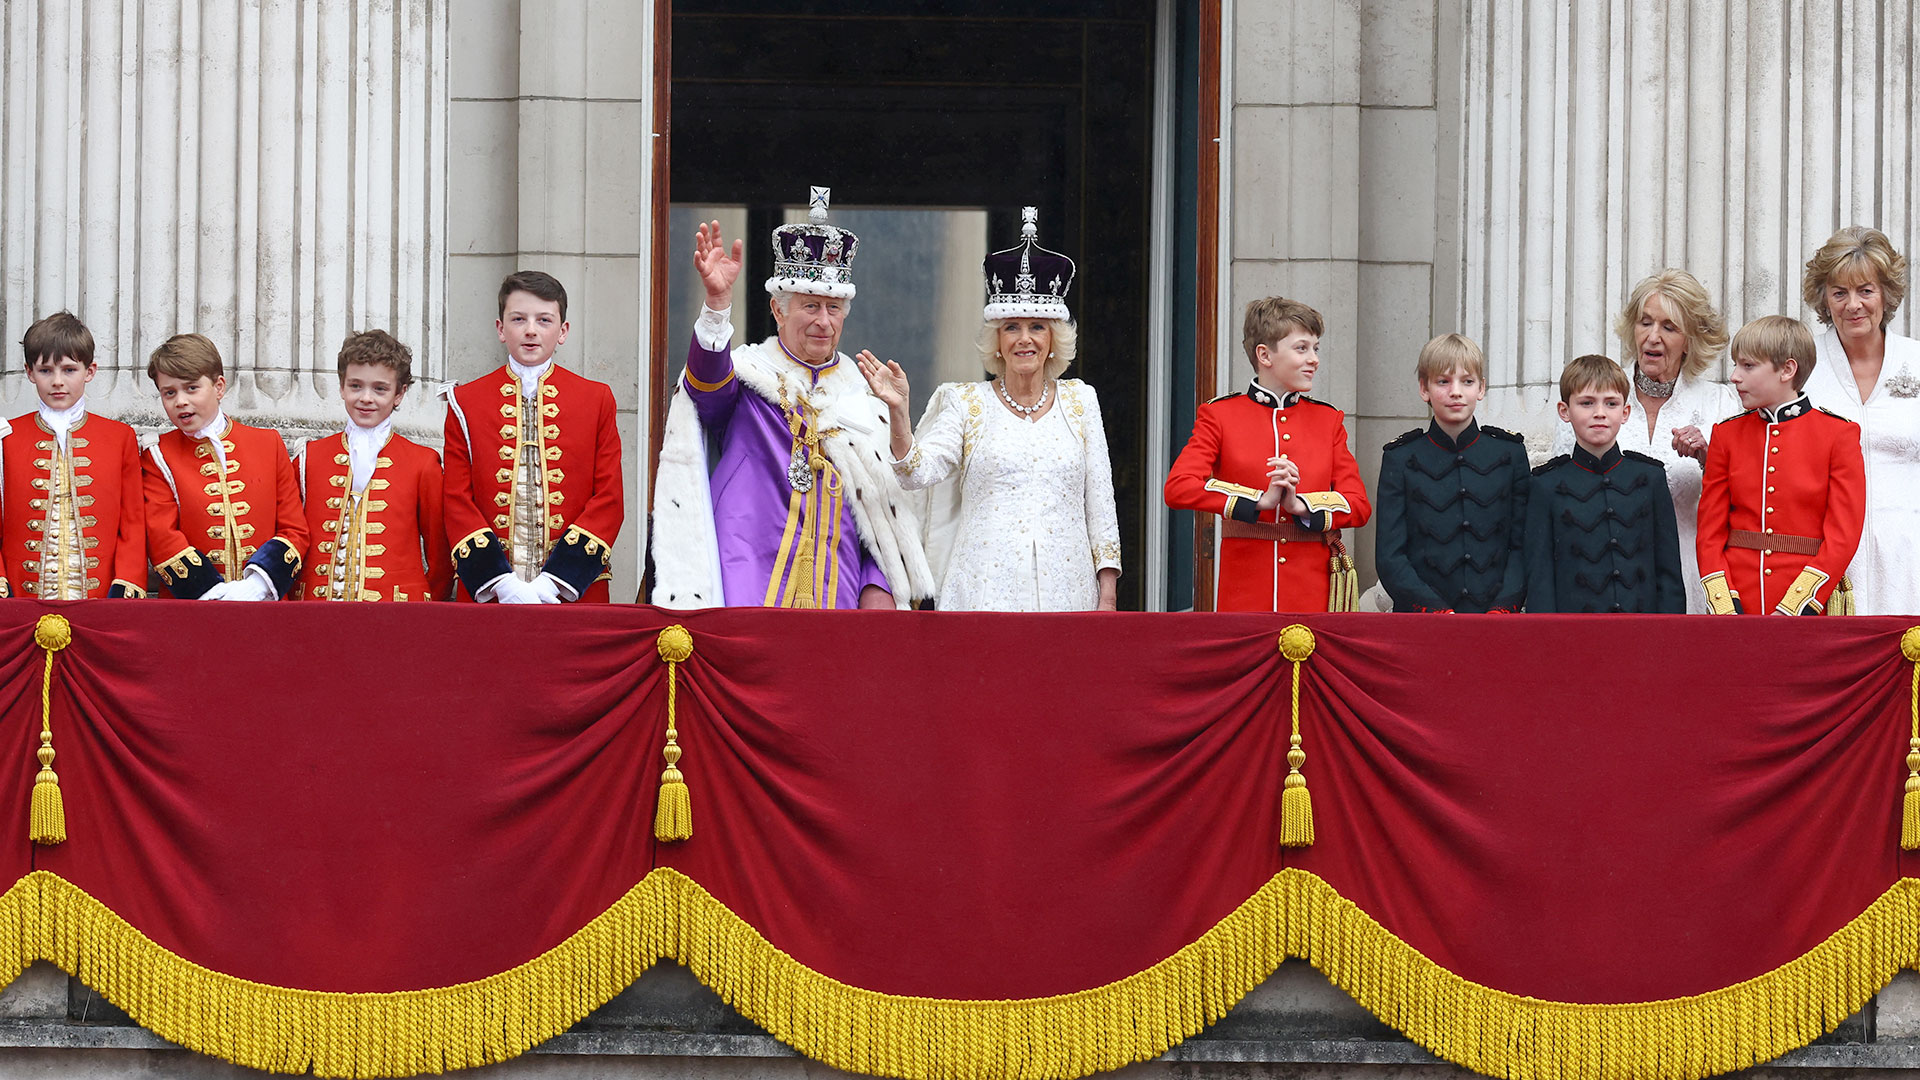 Carlos III y Camila saludan desde el balcón (REUTERS/Matthew Childs)

